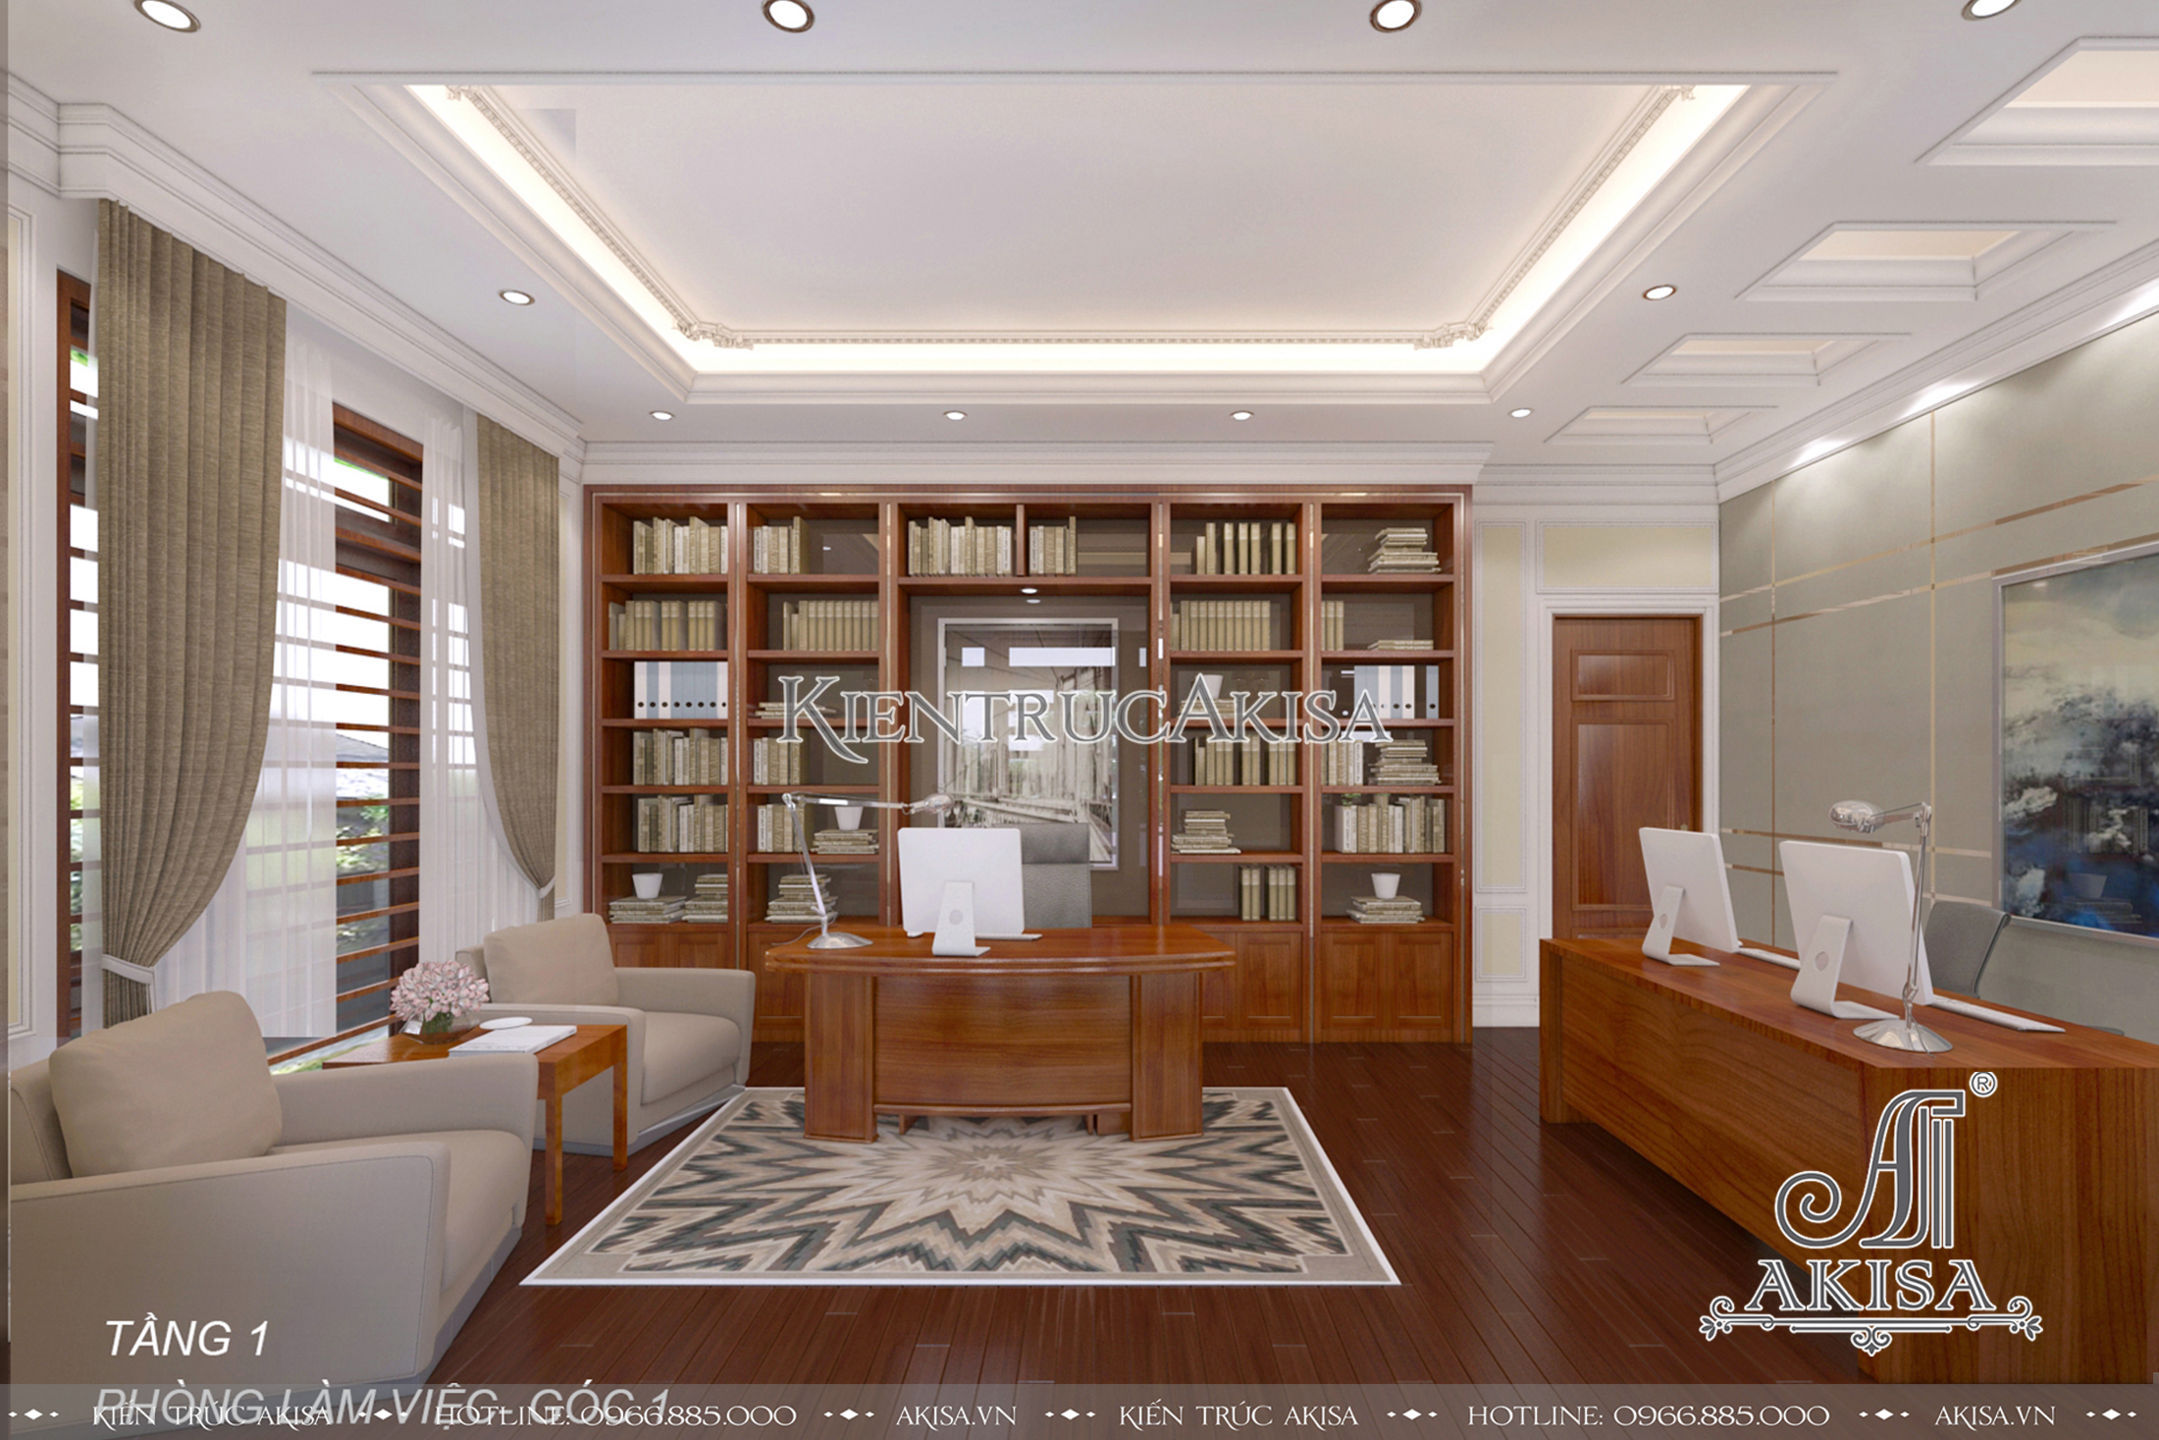 Phòng làm việc sơn màu vàng nhạt kết hợp với các đồ nội thất, sàn bằng gỗ, thảm trải sàn thiết kế đơn giản tạo vẻ đẹp nhẹ nhàng, tinh tế.